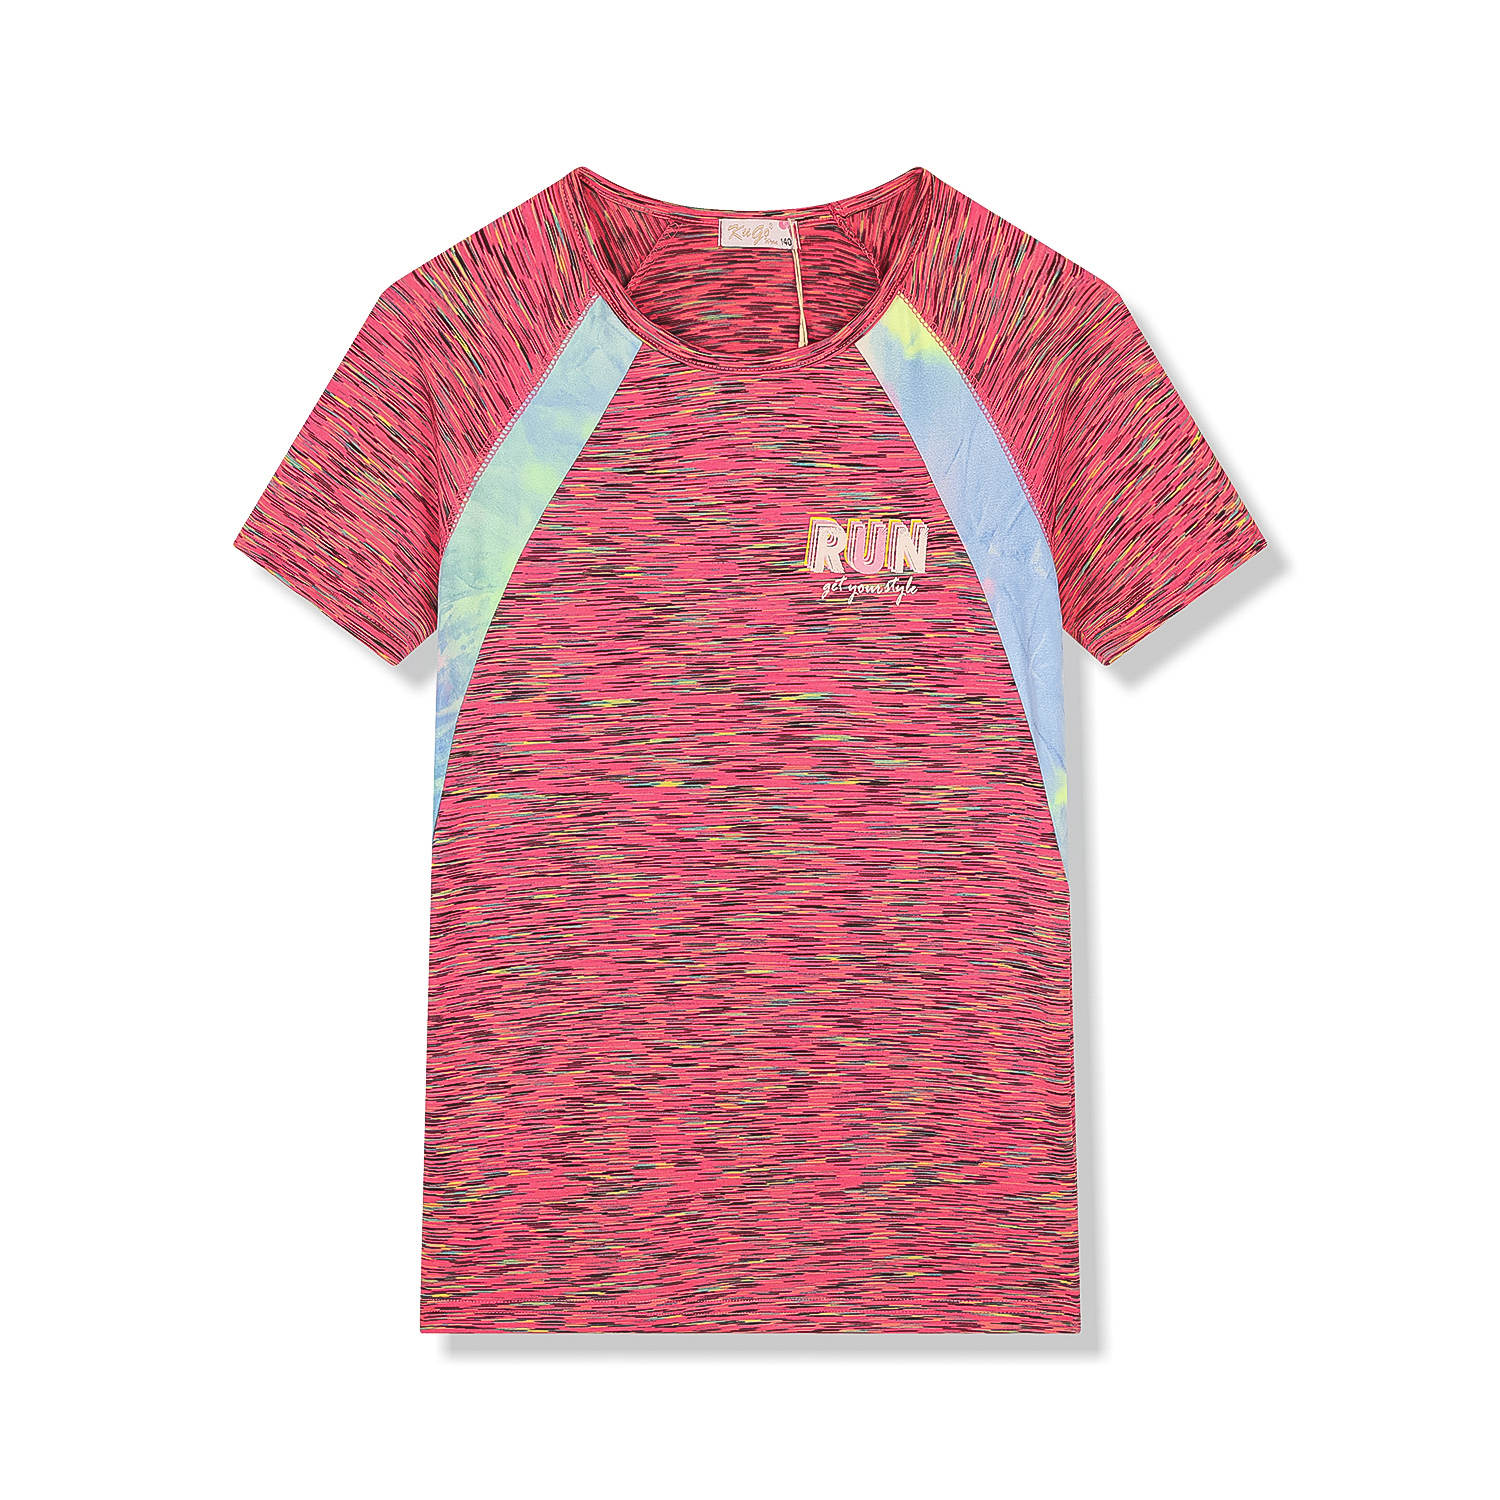 Dívčí funkční tričko - KUGO FC6756, fialovorůžová / žíhání Barva: Fialovorůžová, Velikost: 152